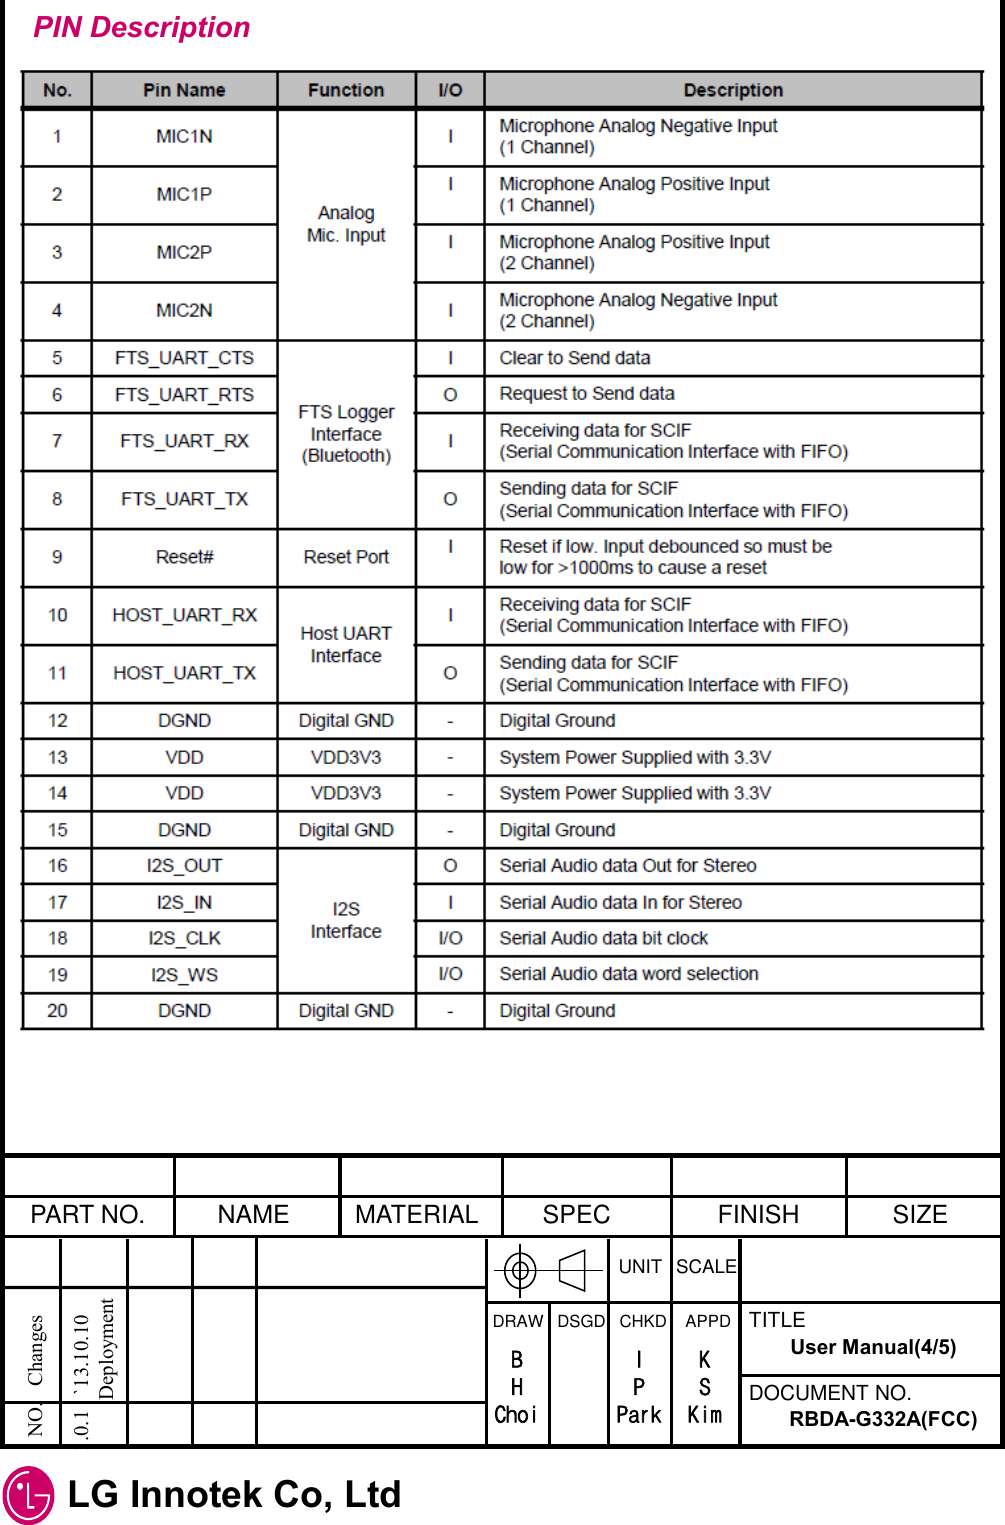  LG Innotek Co, Ltd   PART NO.  NAME  MATERIAL  SPEC  FINISH  SIZE UNIT  SCALE DRAW   DSGD   CHKD    APPD  TITLE DOCUMENT NO. NO.   Changes   1.0.1   `13.10.10             Deployment RBDA-G332A(FCC) User Manual(4/5) B H Choi I P Park K S Kim PIN Description 